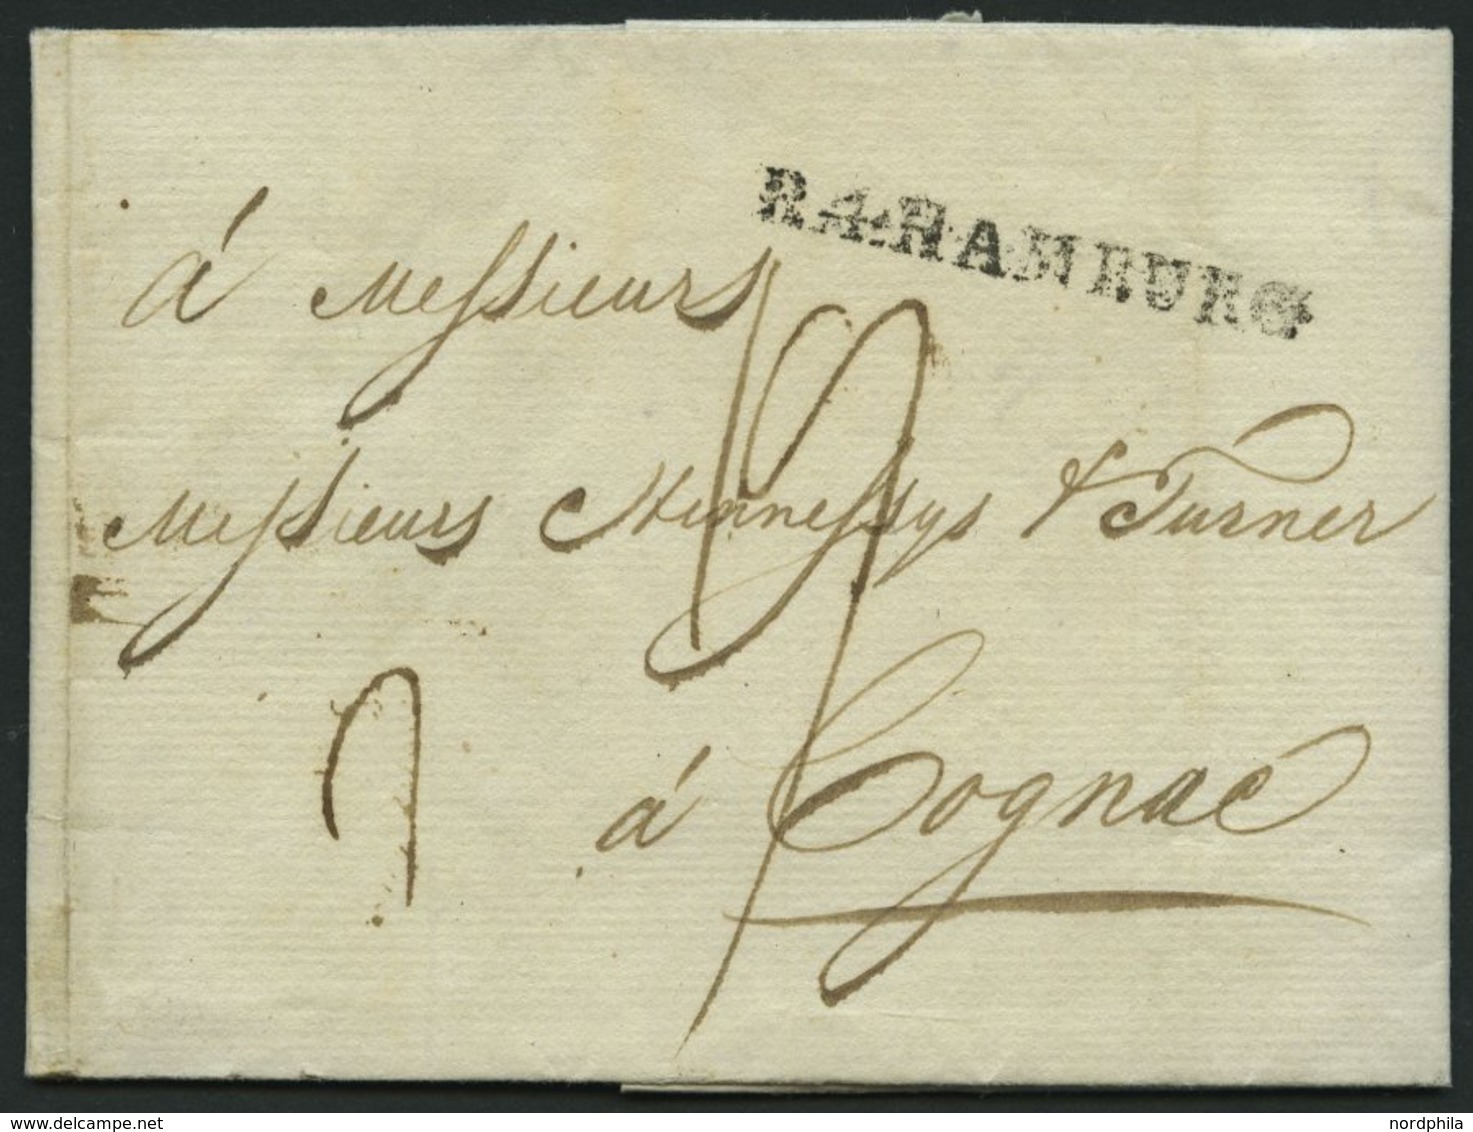 HAMBURG 1805, R.4. HAMBURG, L1 Auf Brief Nach Cognac, Pracht - Vorphilatelie